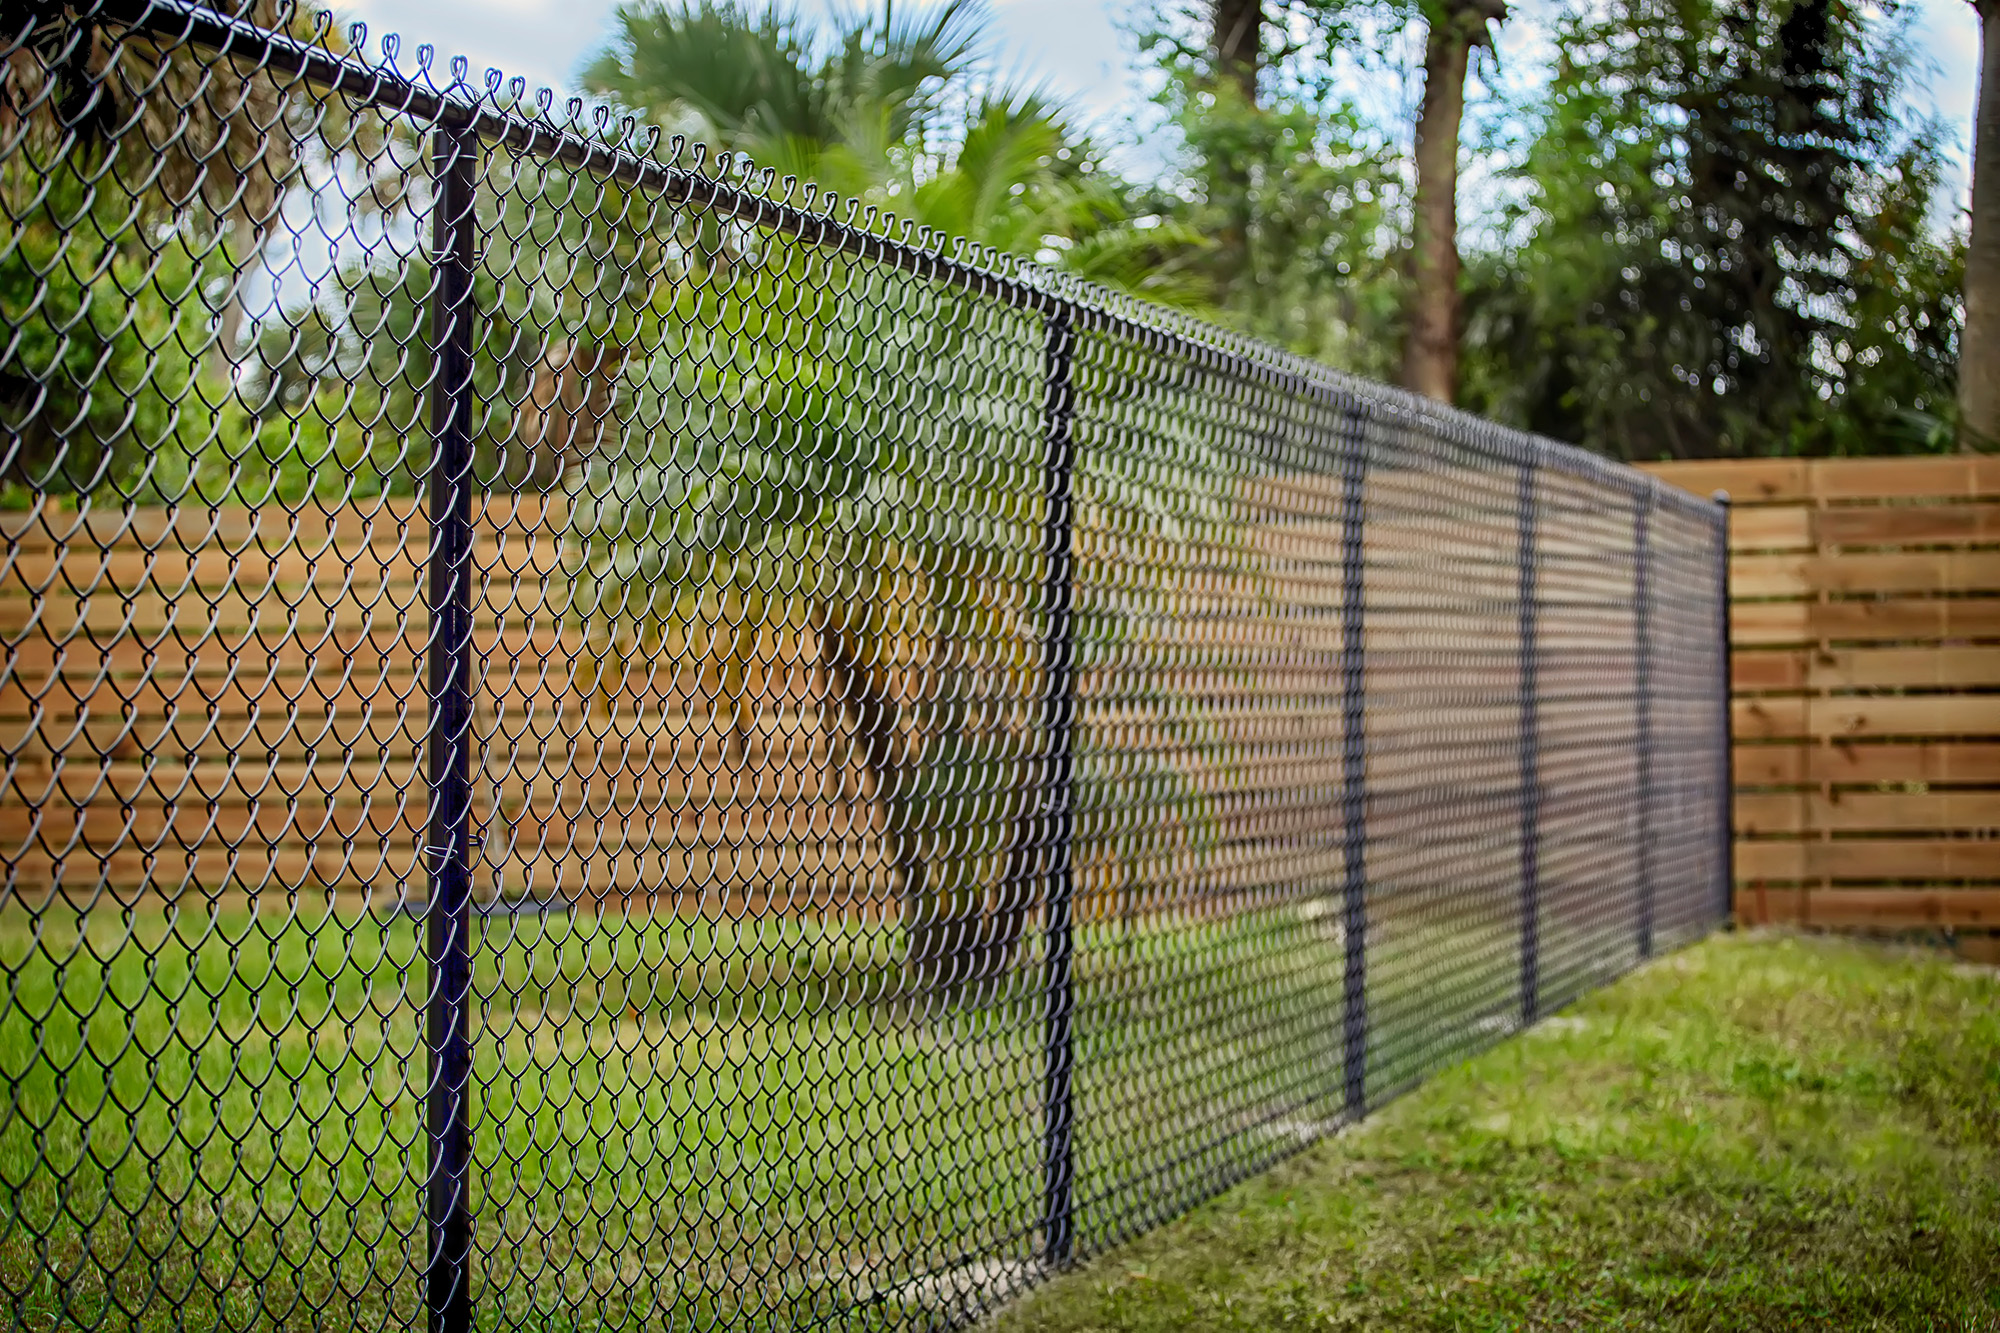 Mon voisin veut remplacer notre clôture mitoyenne, pourtant en parfait état. Puis-je refuser ?